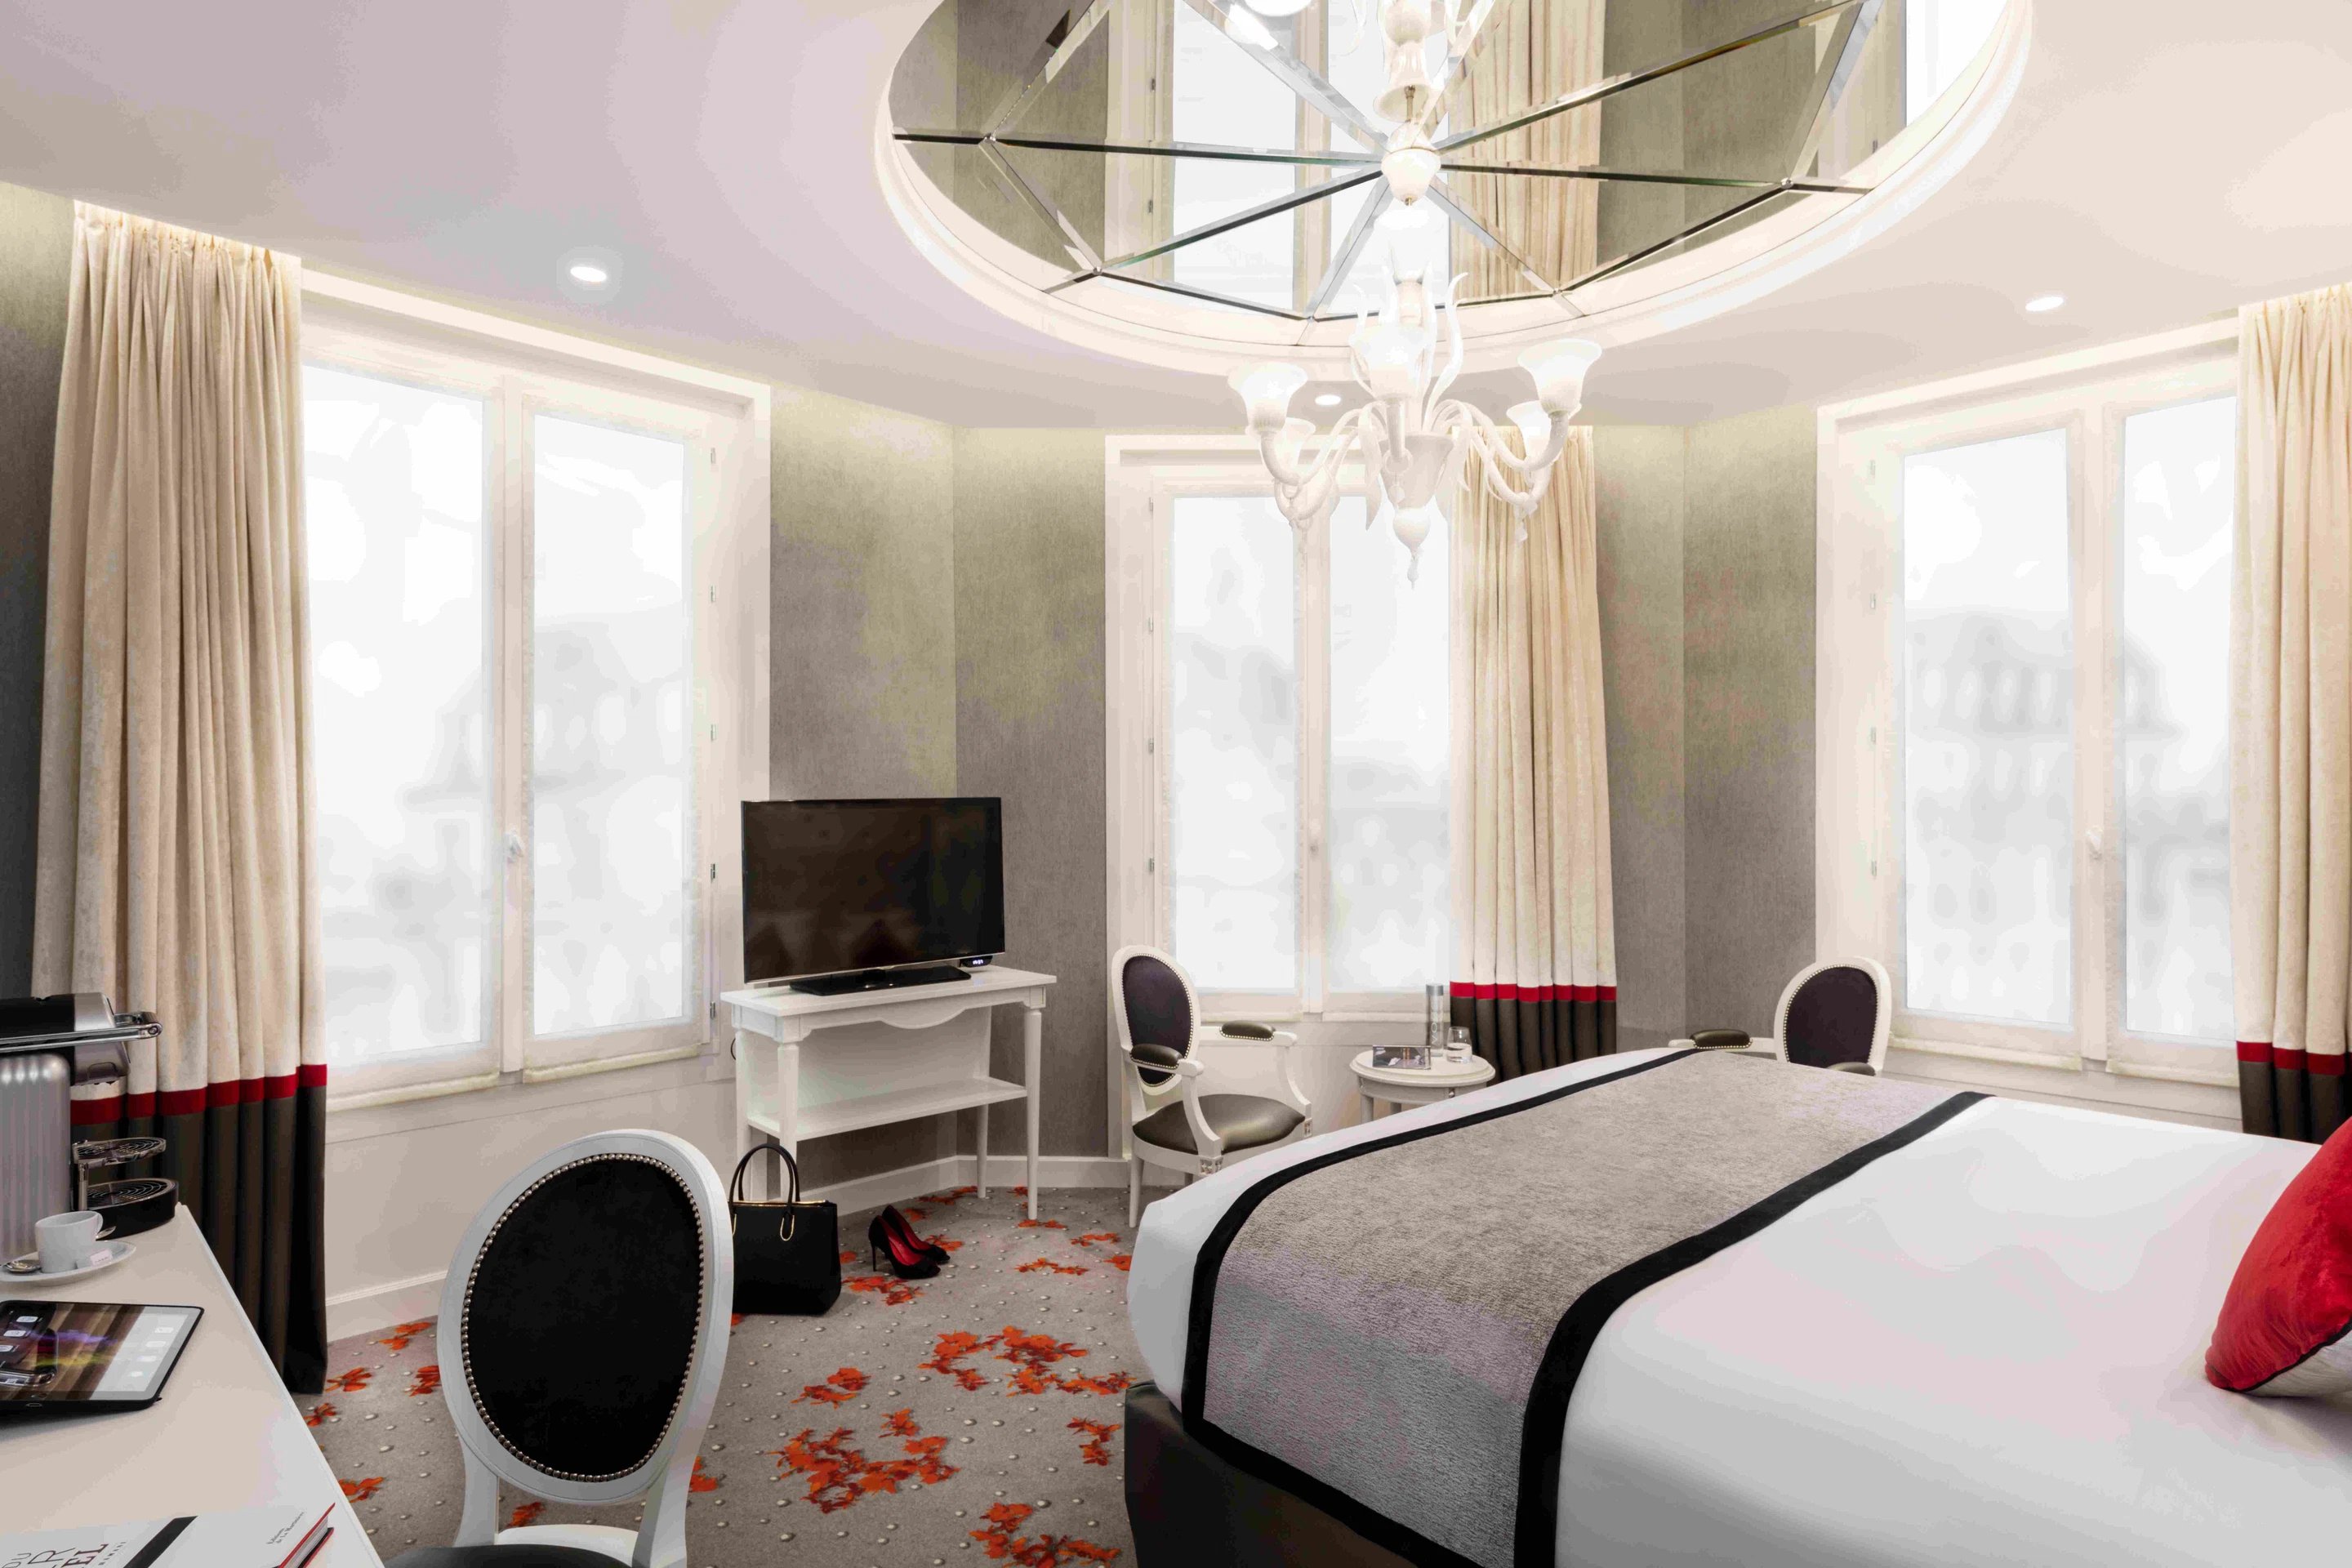 Maison Albar Hotels Le Diamond Diamond Suite